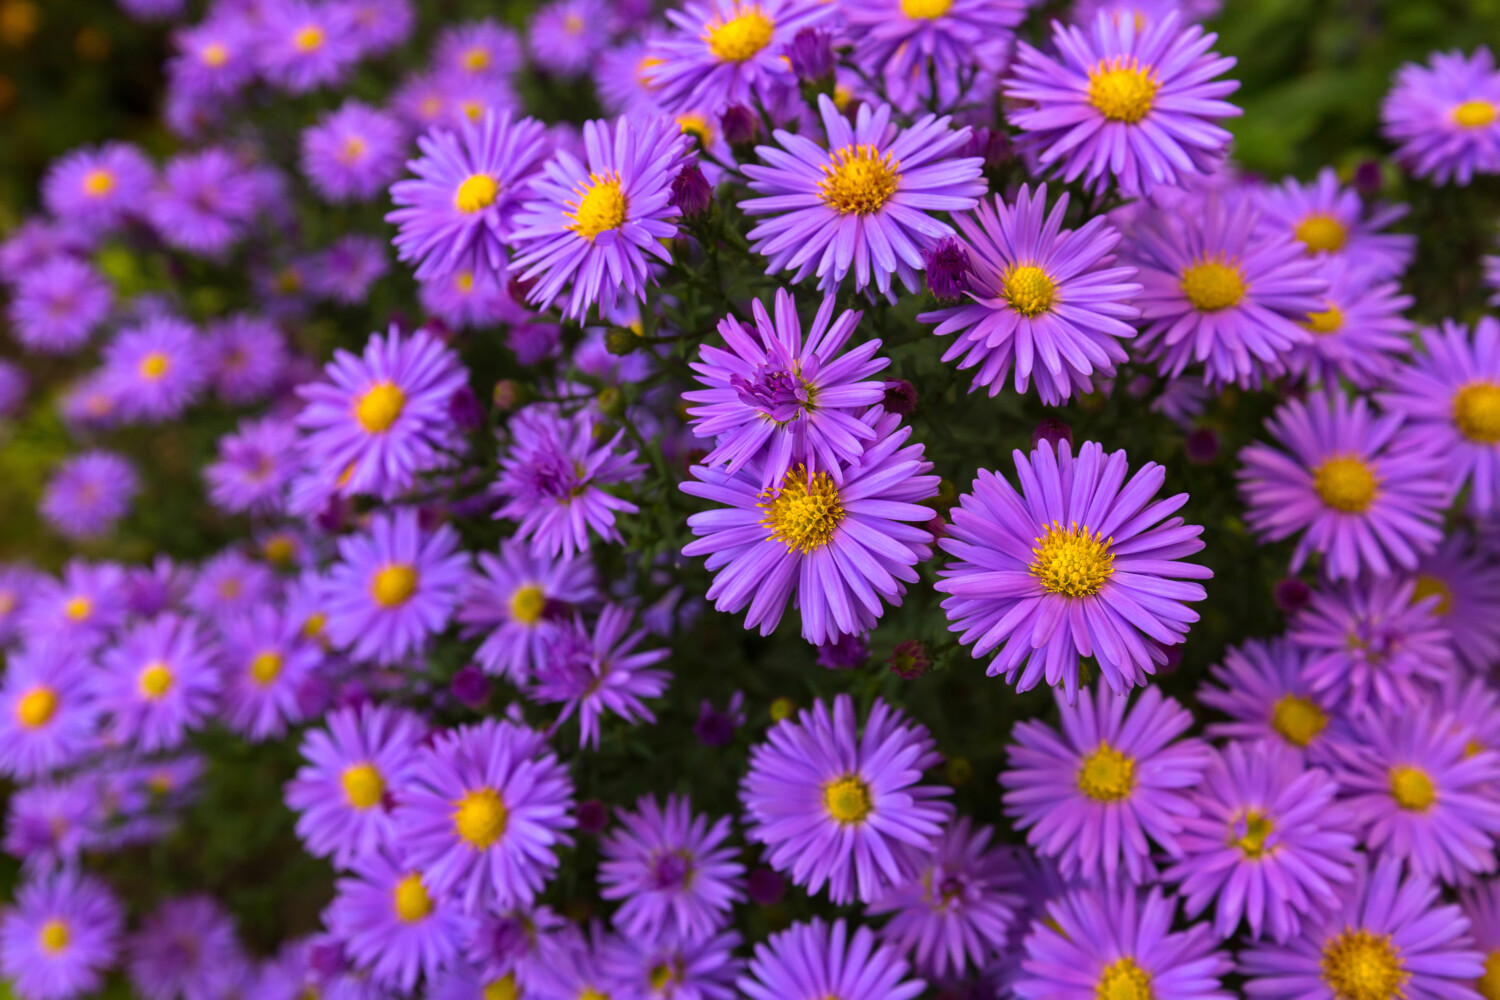 Purple aster flowers in bloom